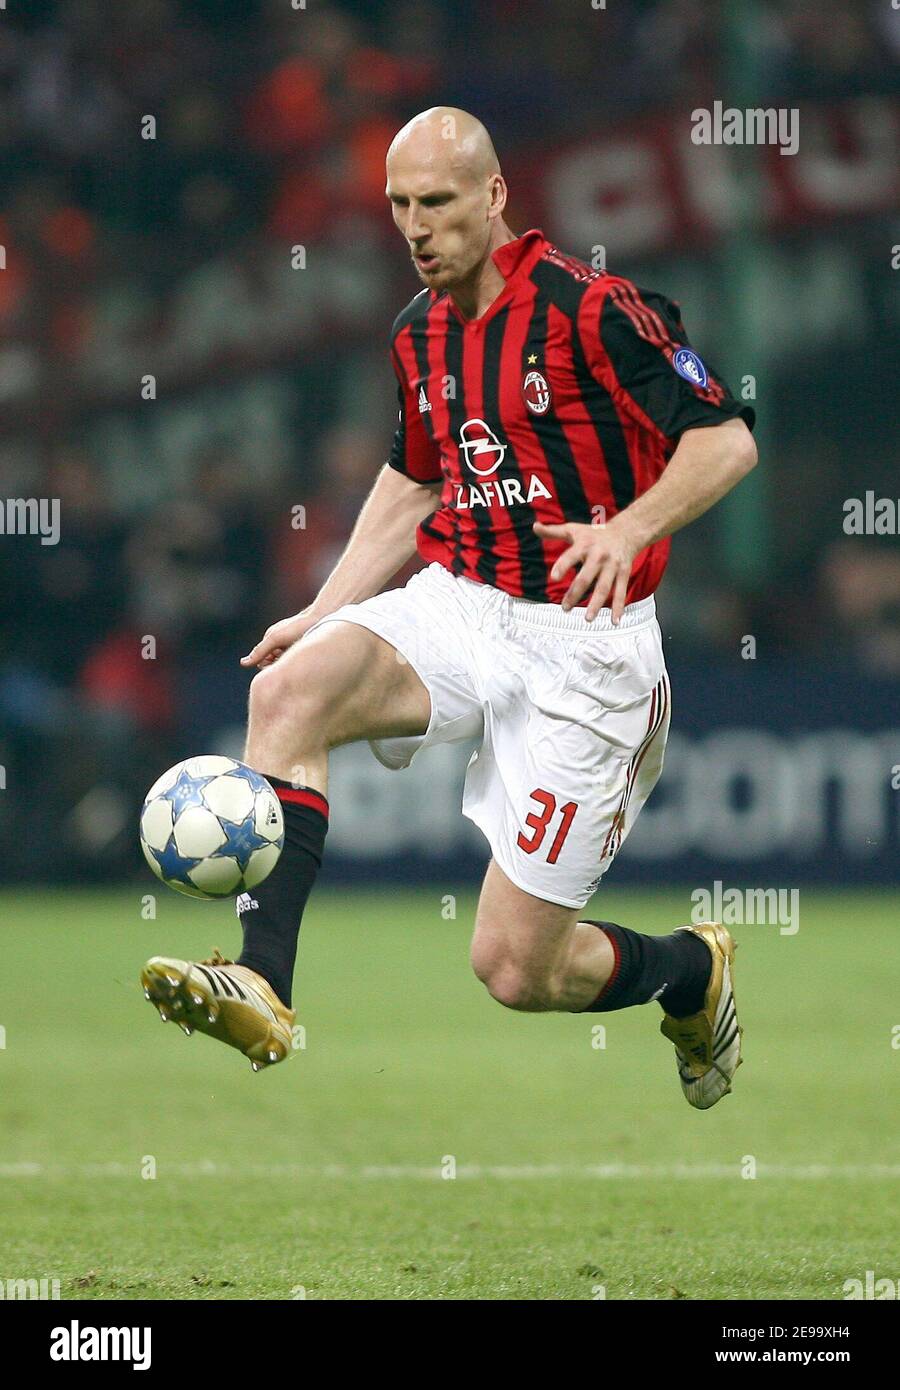 Le Jaap Stam Milan en action lors de la semi-finale de l'UEFA Champions League First Leg, AC Milan vs Barcelone à Milan, Italie, le 18 avril 2006. Barcelone a gagné 1-0.